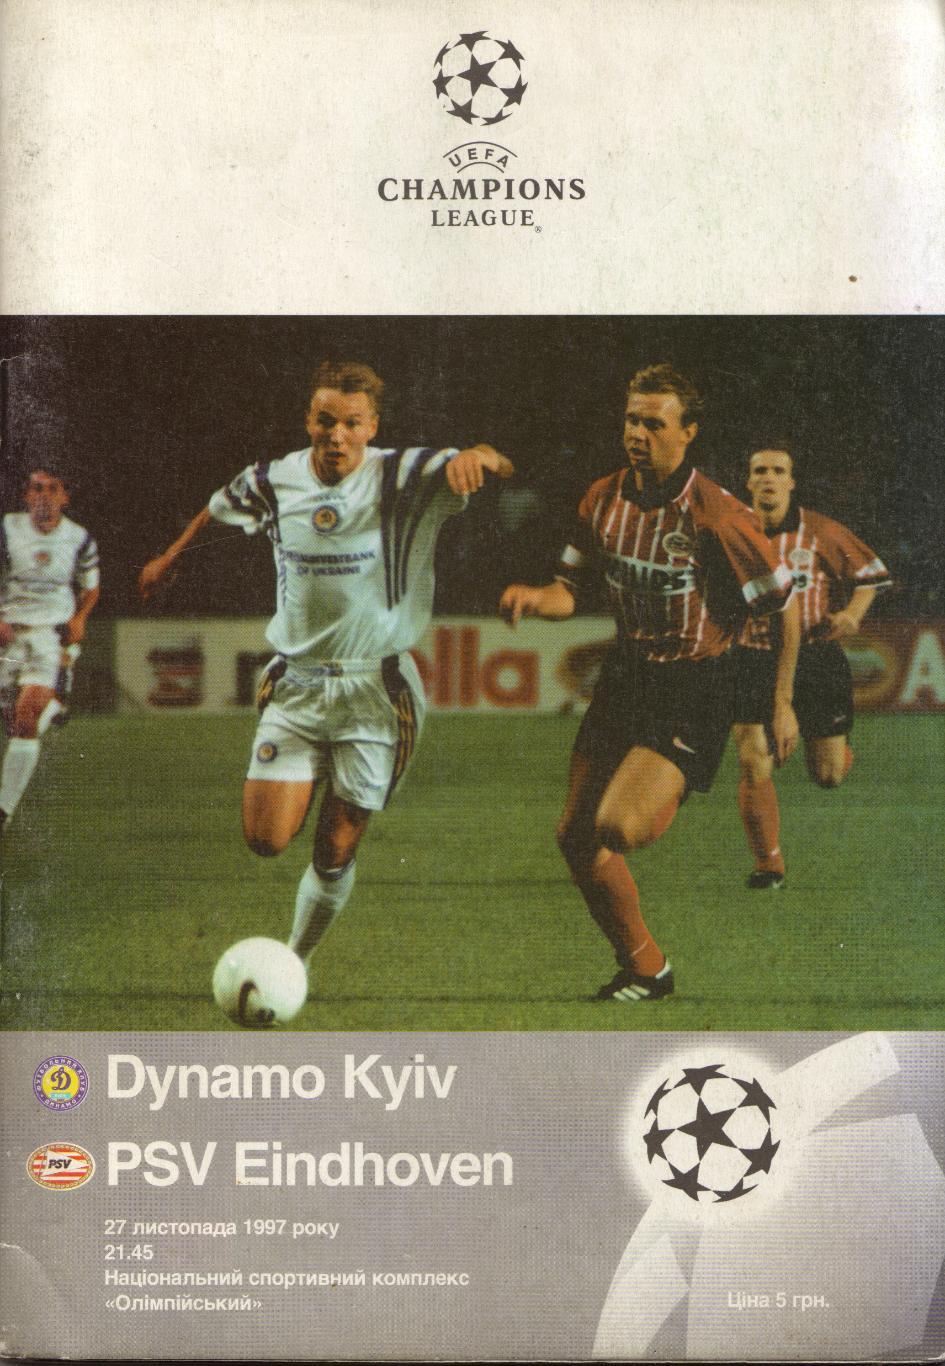 Динамо Киев, Украина - ПСВ Эйндховен Голландия 27.11.1997